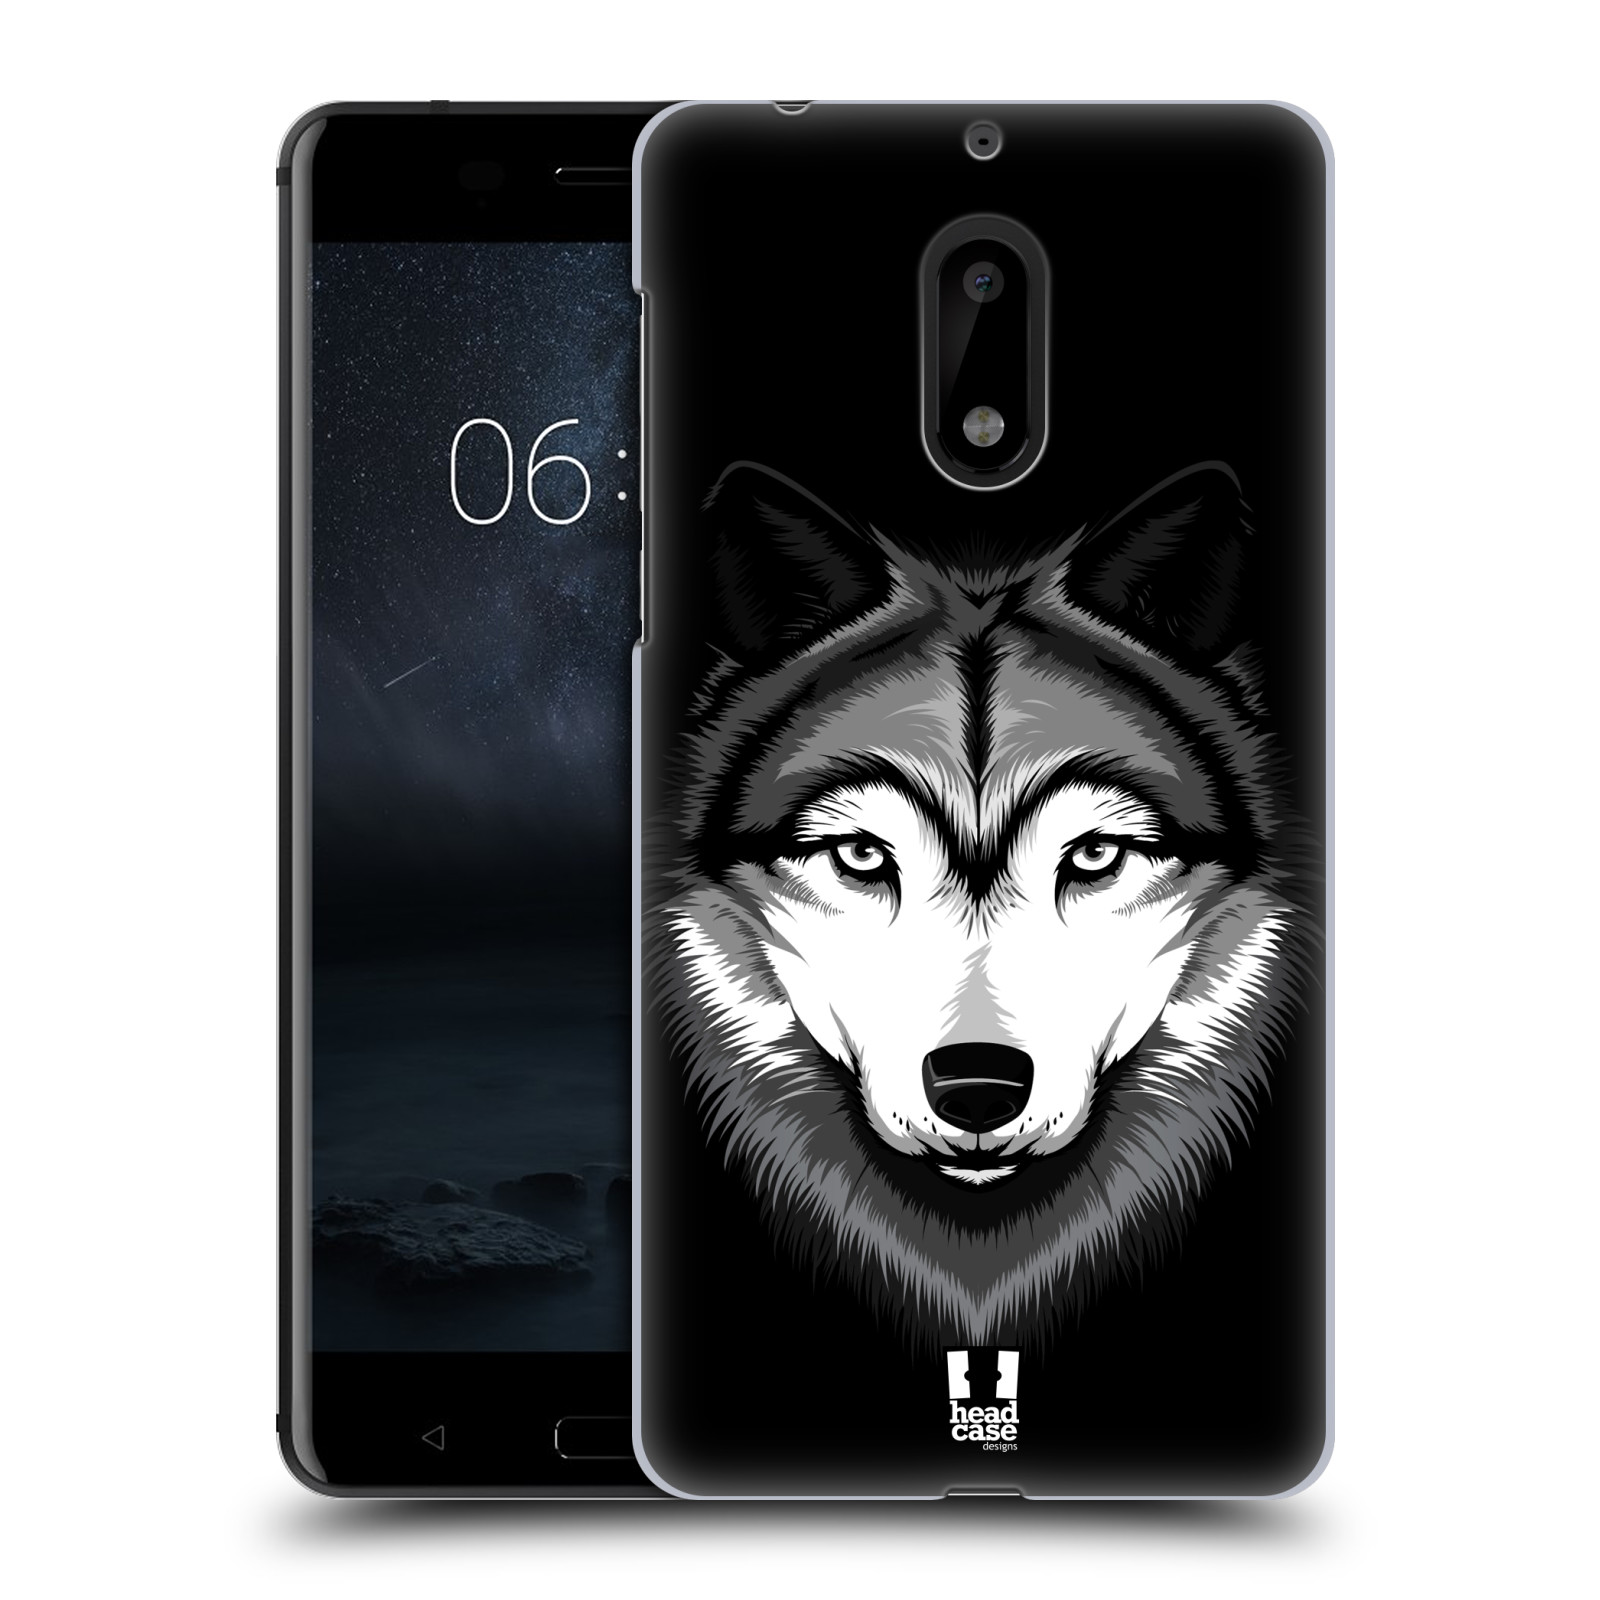 HEAD CASE plastový obal na mobil Nokia 6 vzor Zvíře kreslená tvář 2 vlk